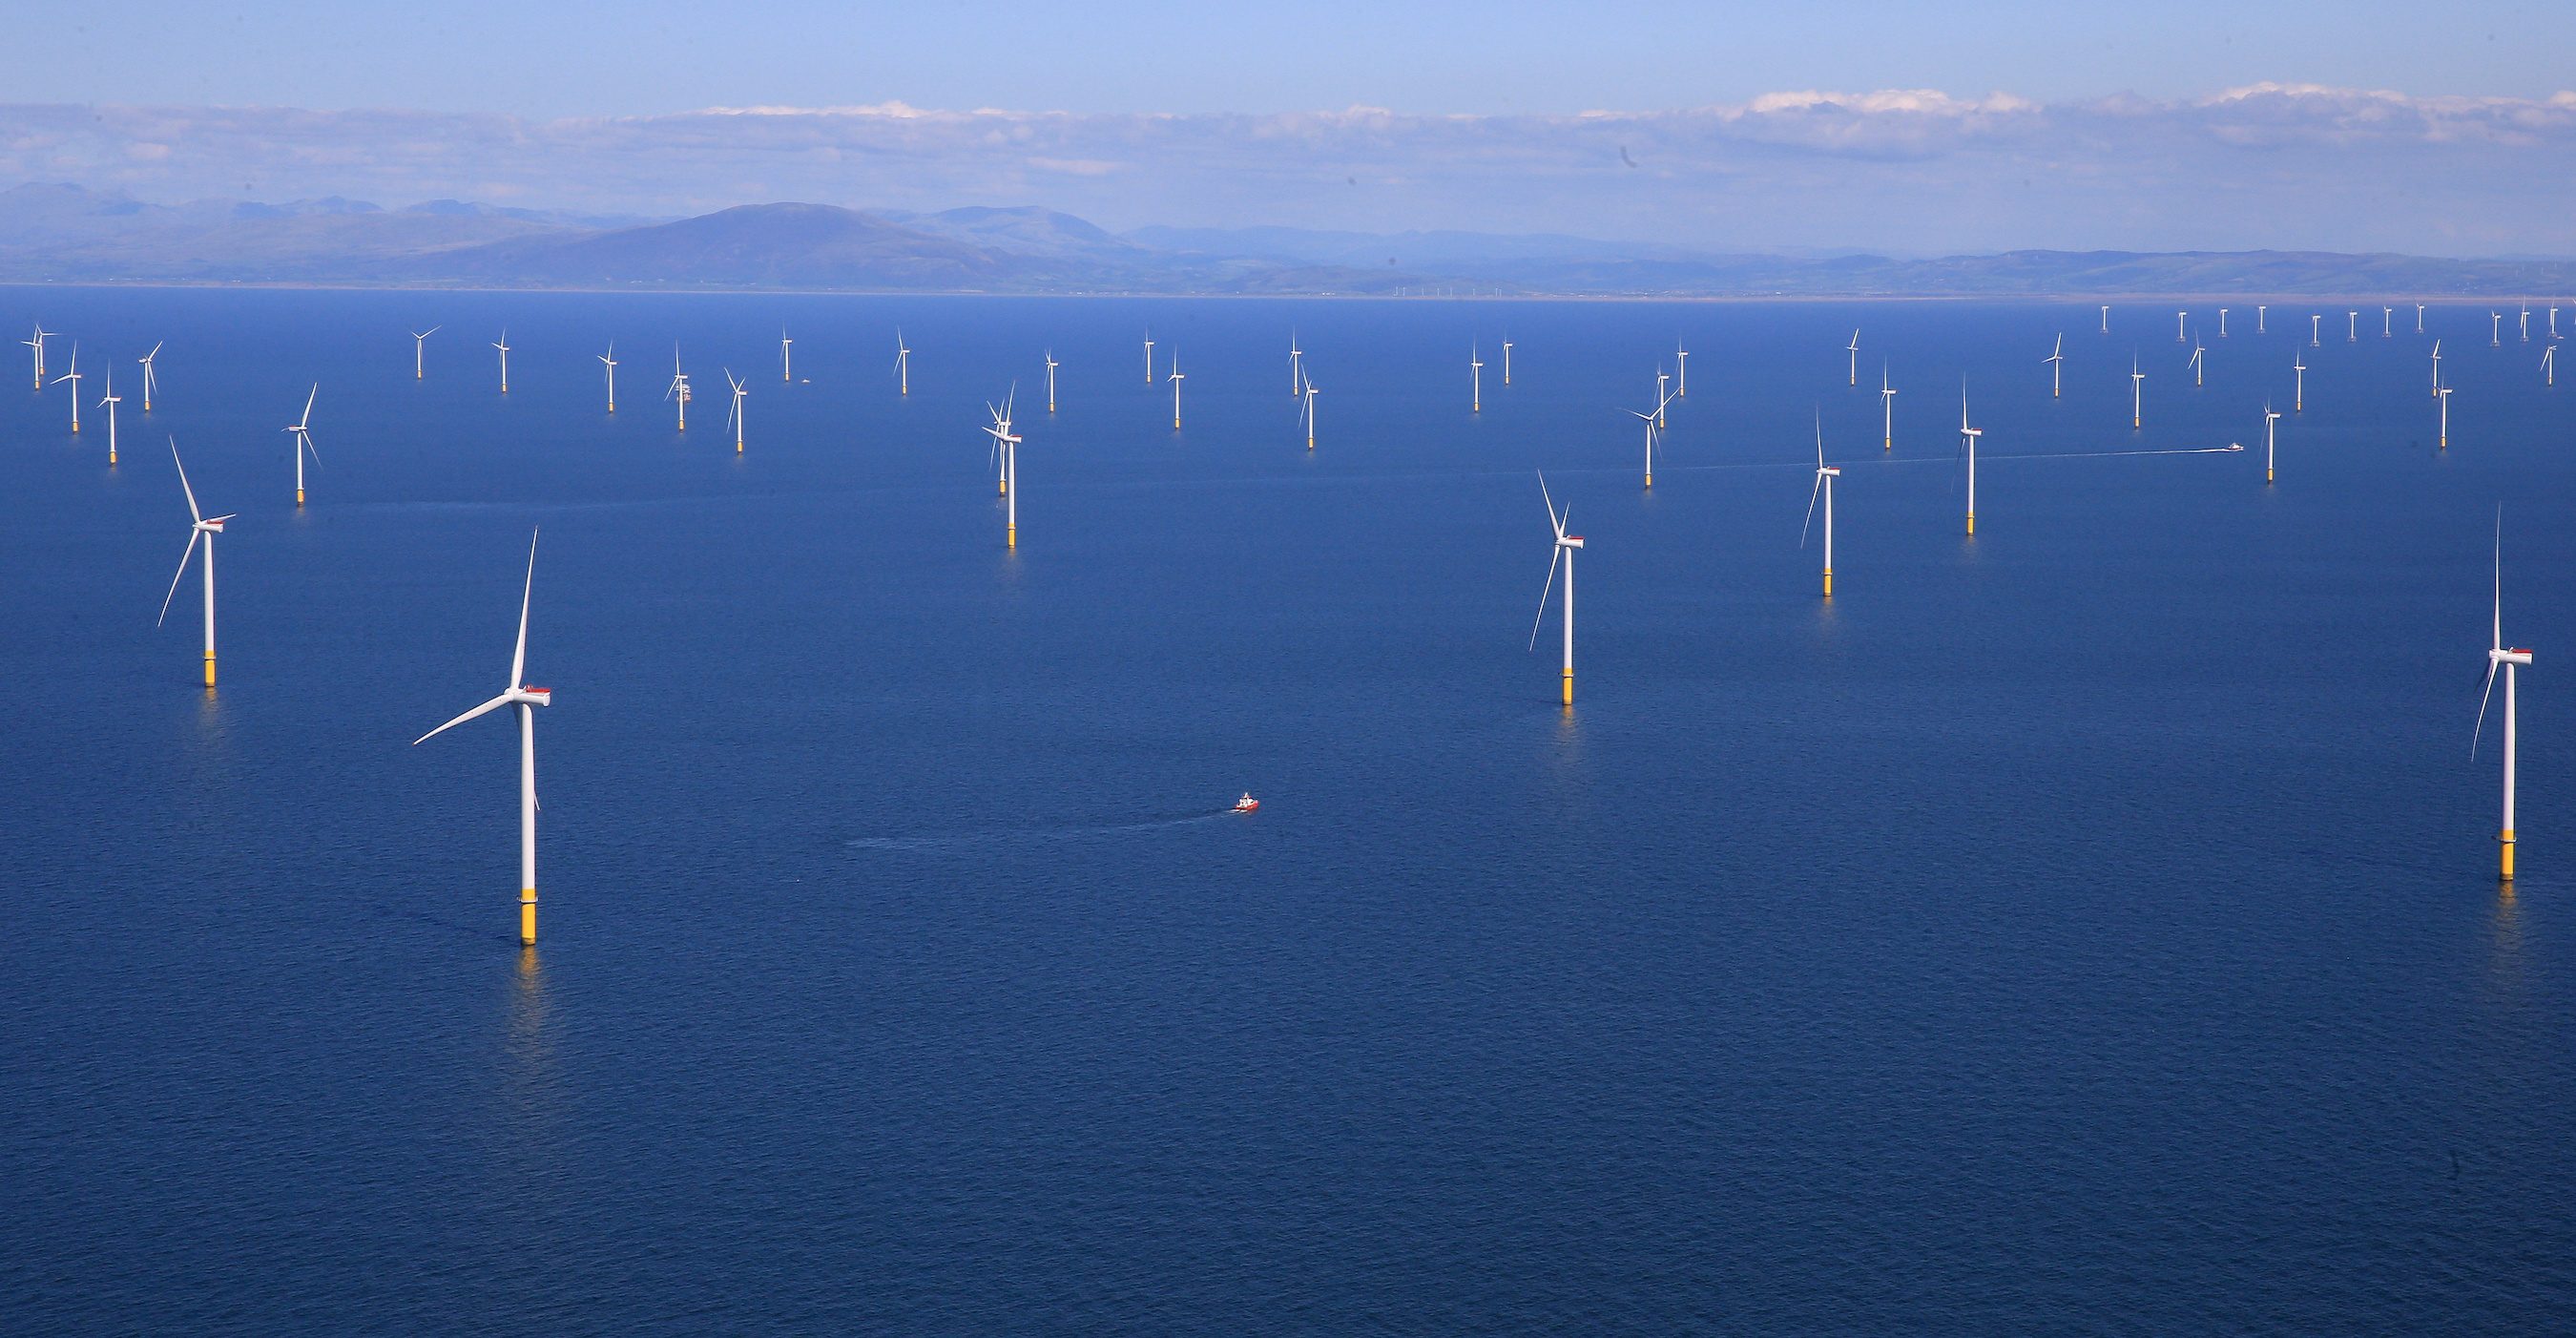 South Korea unveils $43-billion plan for world’s largest offshore wind farm